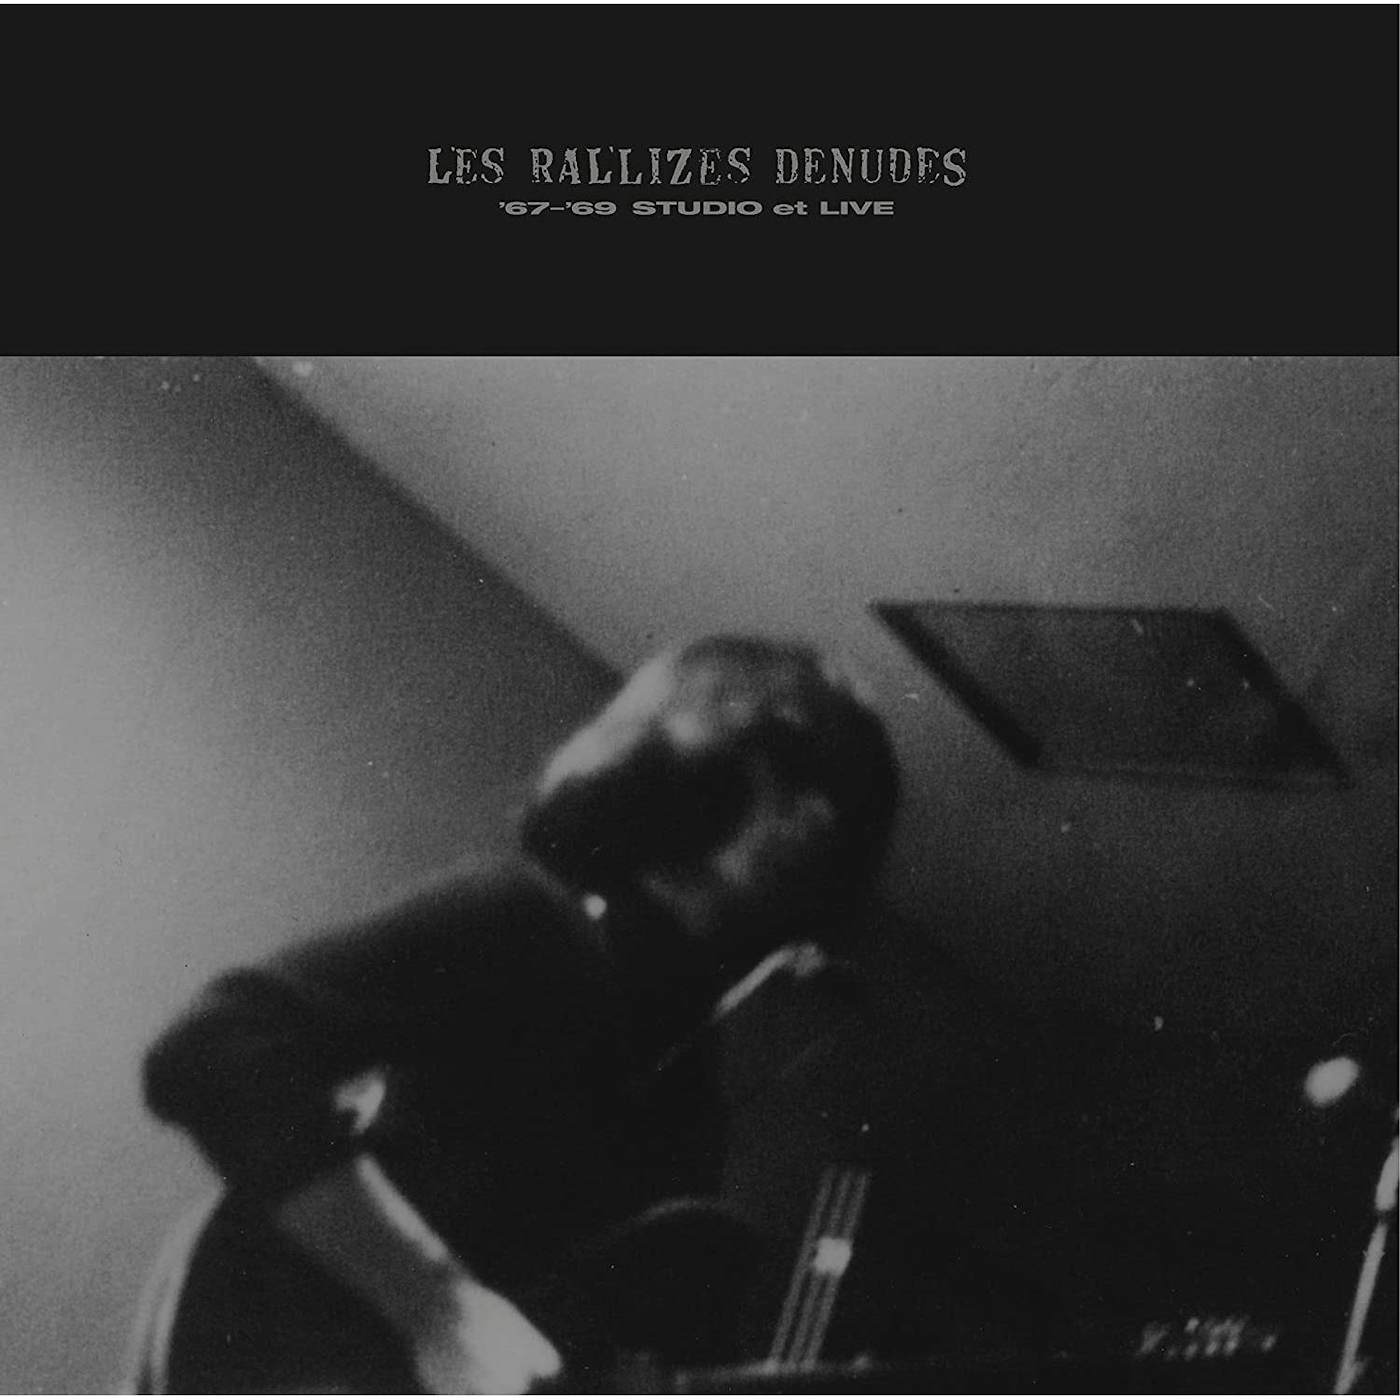 Les Rallizes Dénudés 67-'69 STUDIO ET LIVE (OPAQUE PURPLE VINYL) Vinyl Record